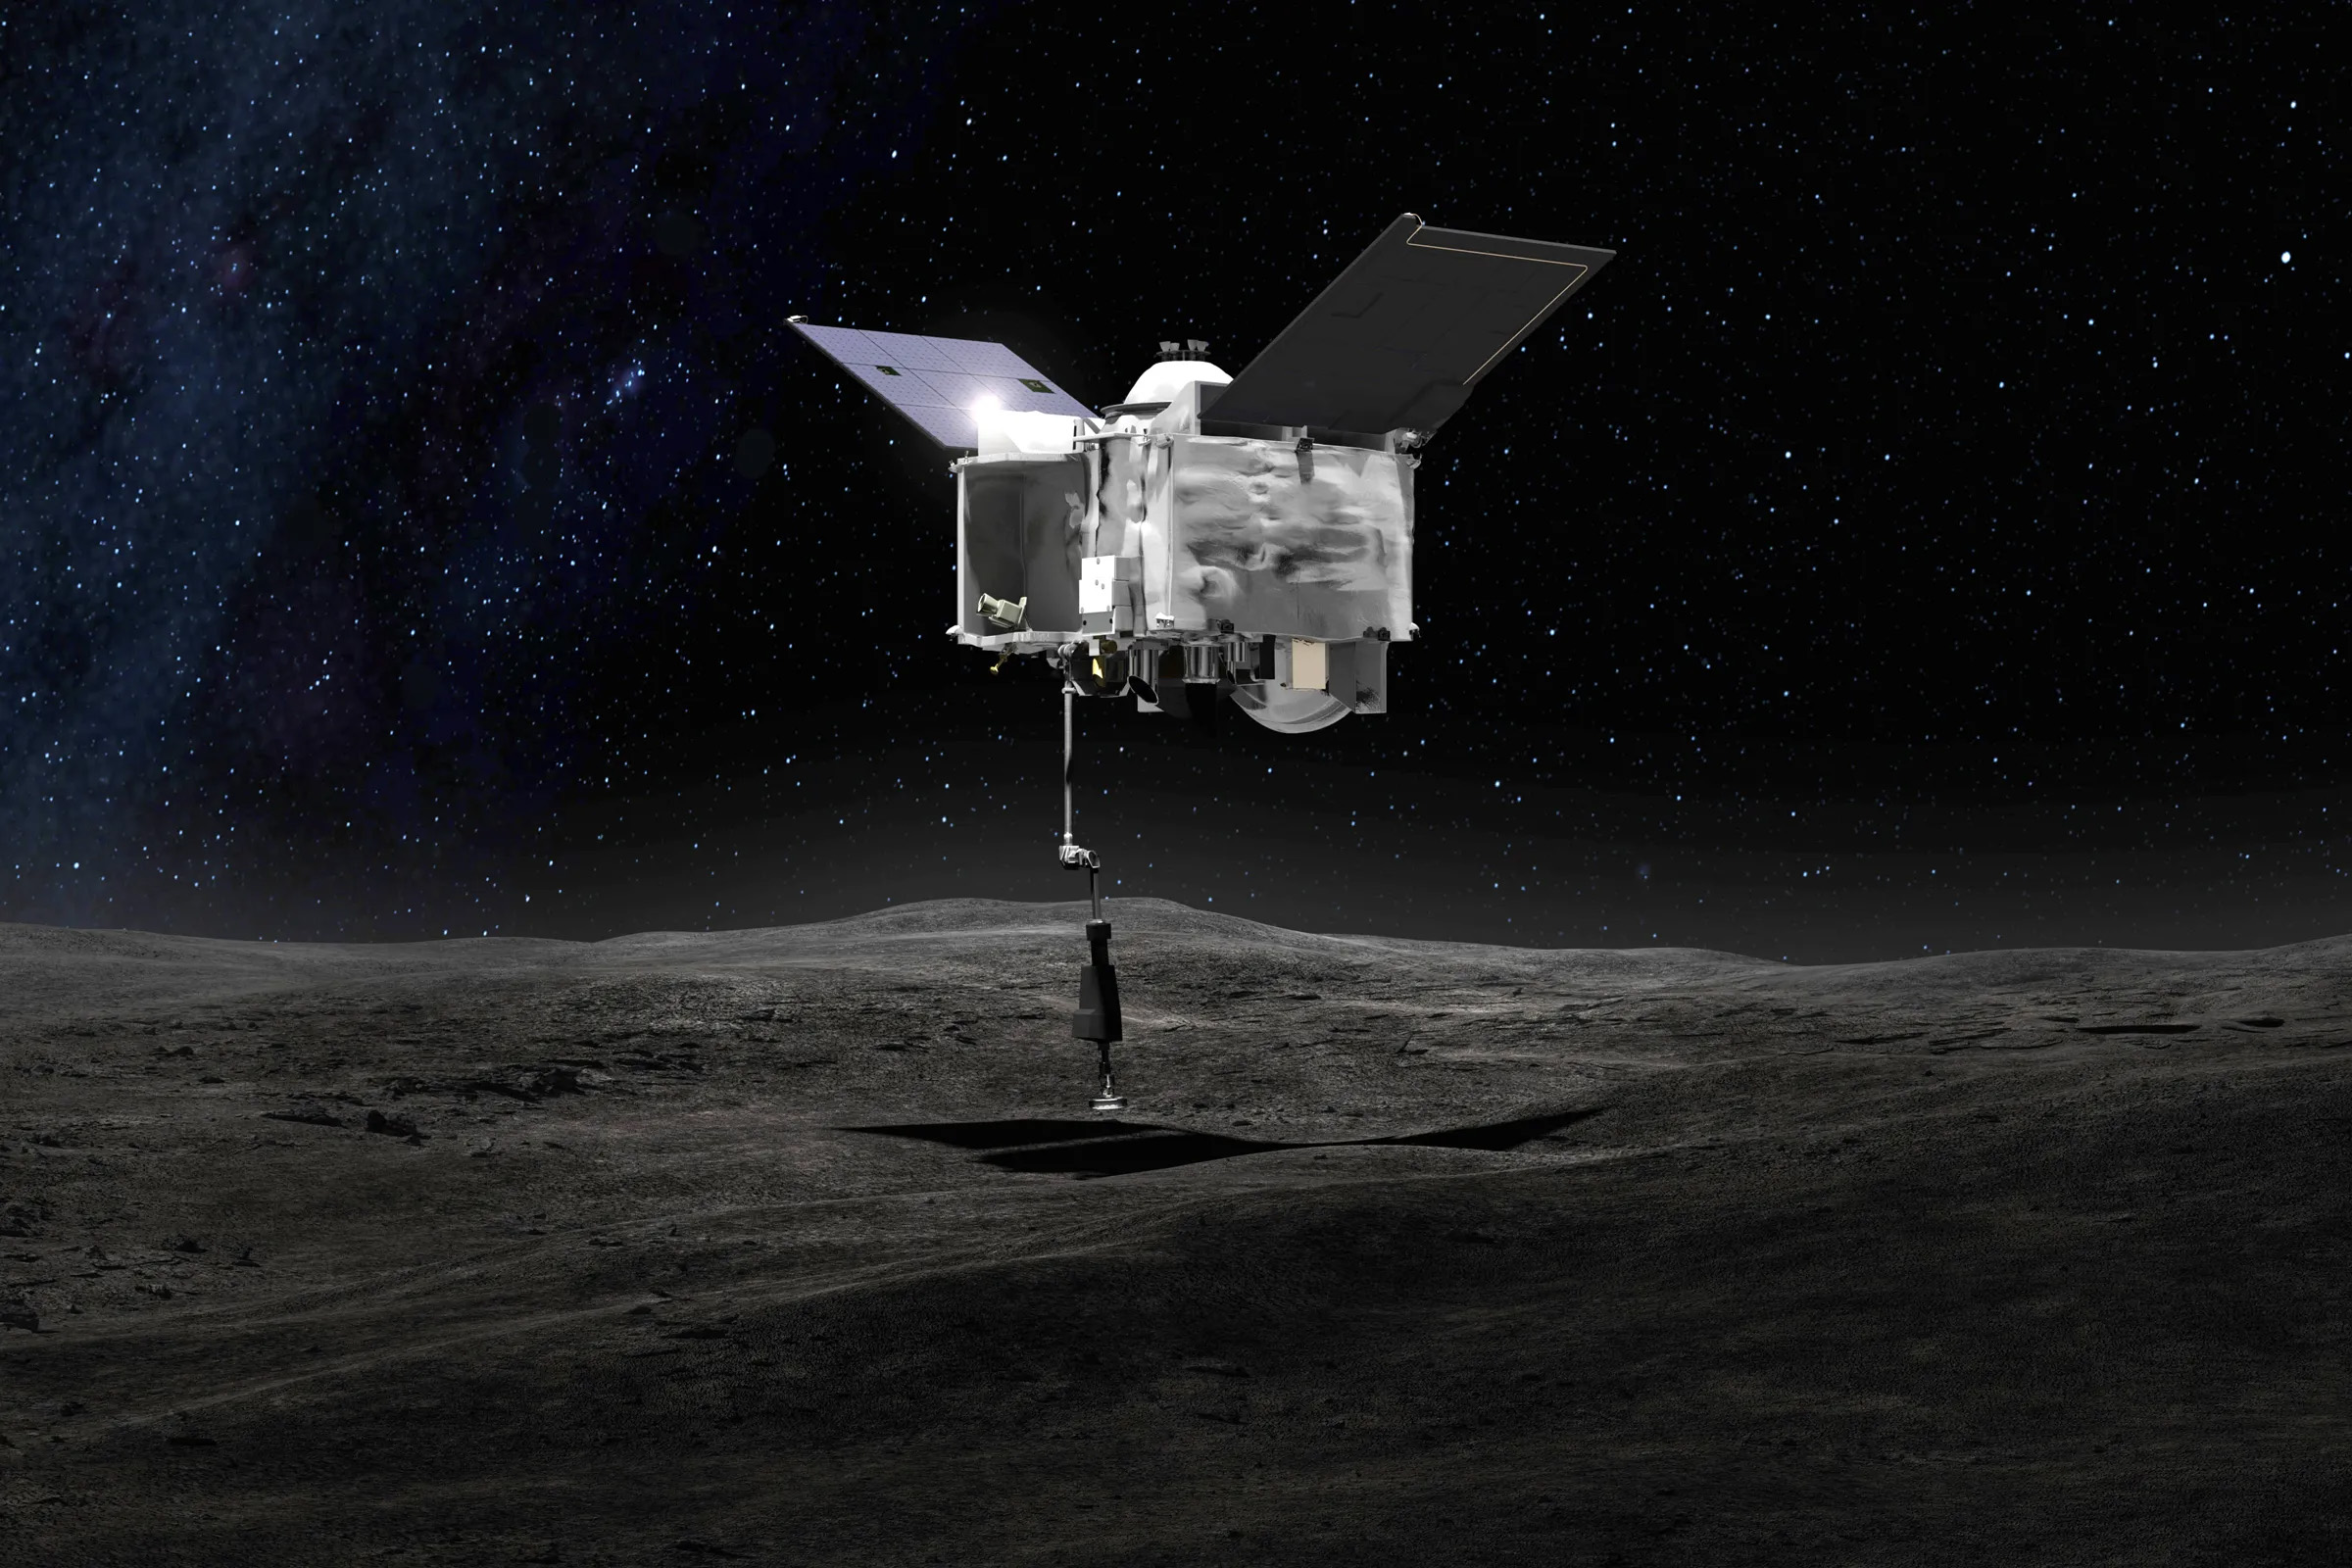 Историческое событие: сегодня, 24 сентября, американский зонд OSIRIS-Rex сбросит на Землю капсулу с образцами грунта с астероида Бенну